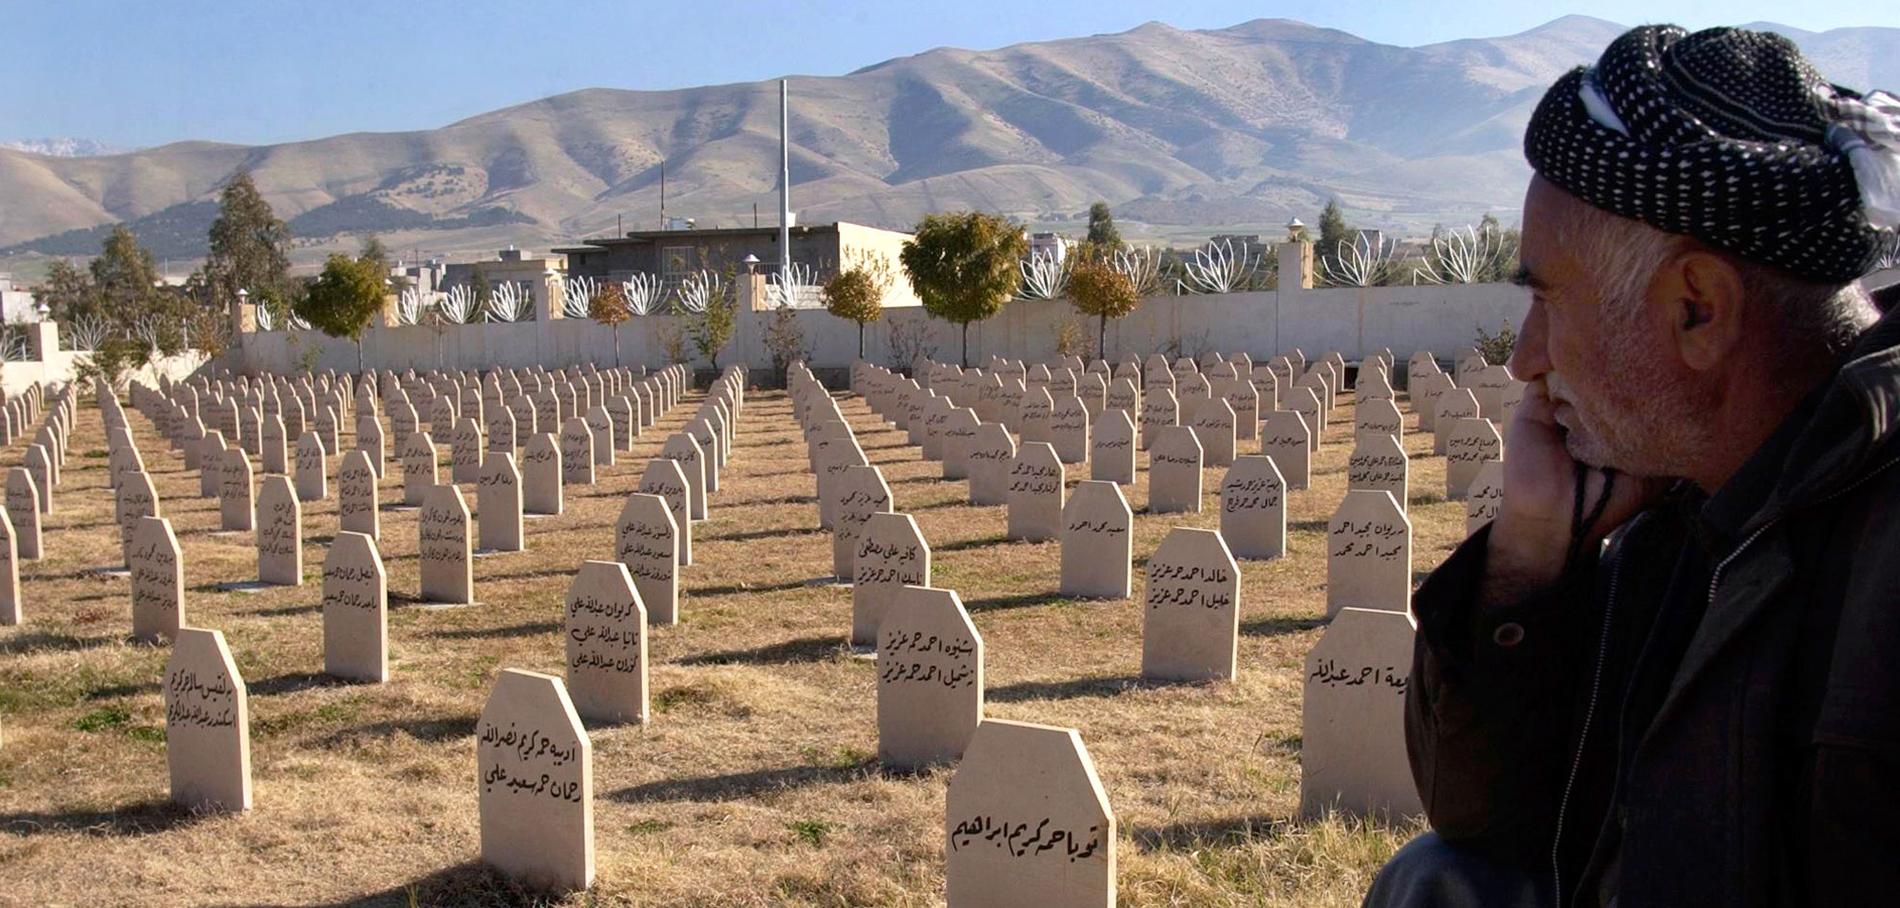 DÖDSGAS Bilden är från kyrkogården i Halabja i Irak, där Saddam Hussein satte in senapsgas mot den egna befolkningen.